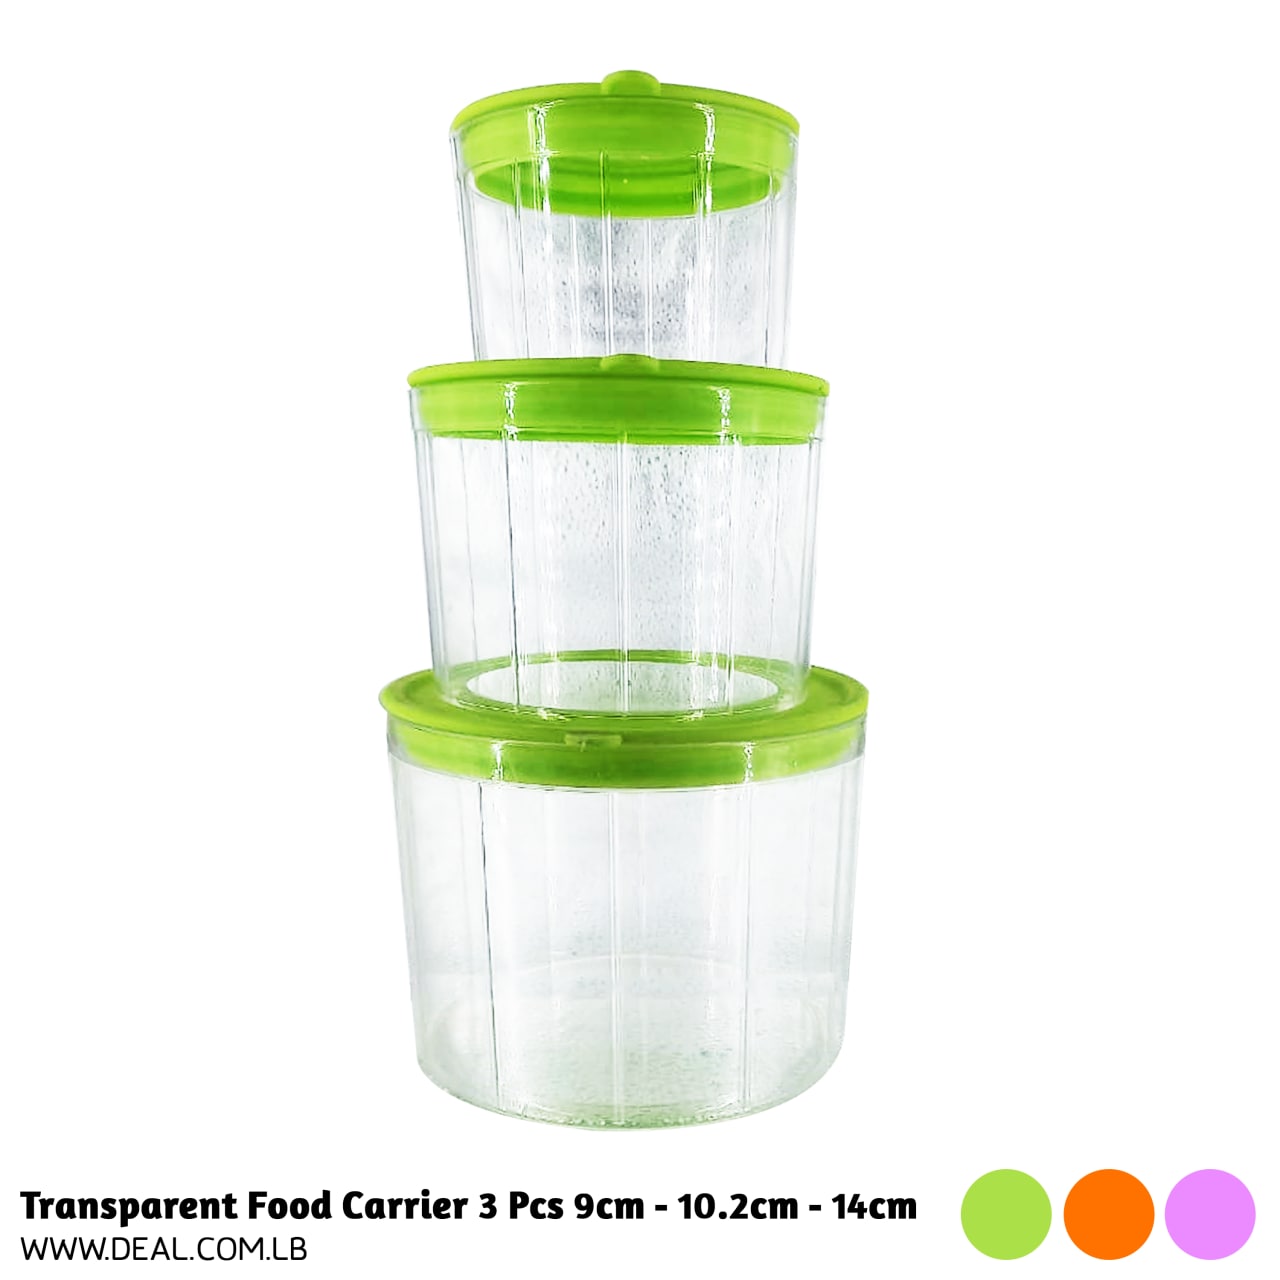 Transparent Food Carrier 3 Pcs 9cm - 10.2cm - 14cm